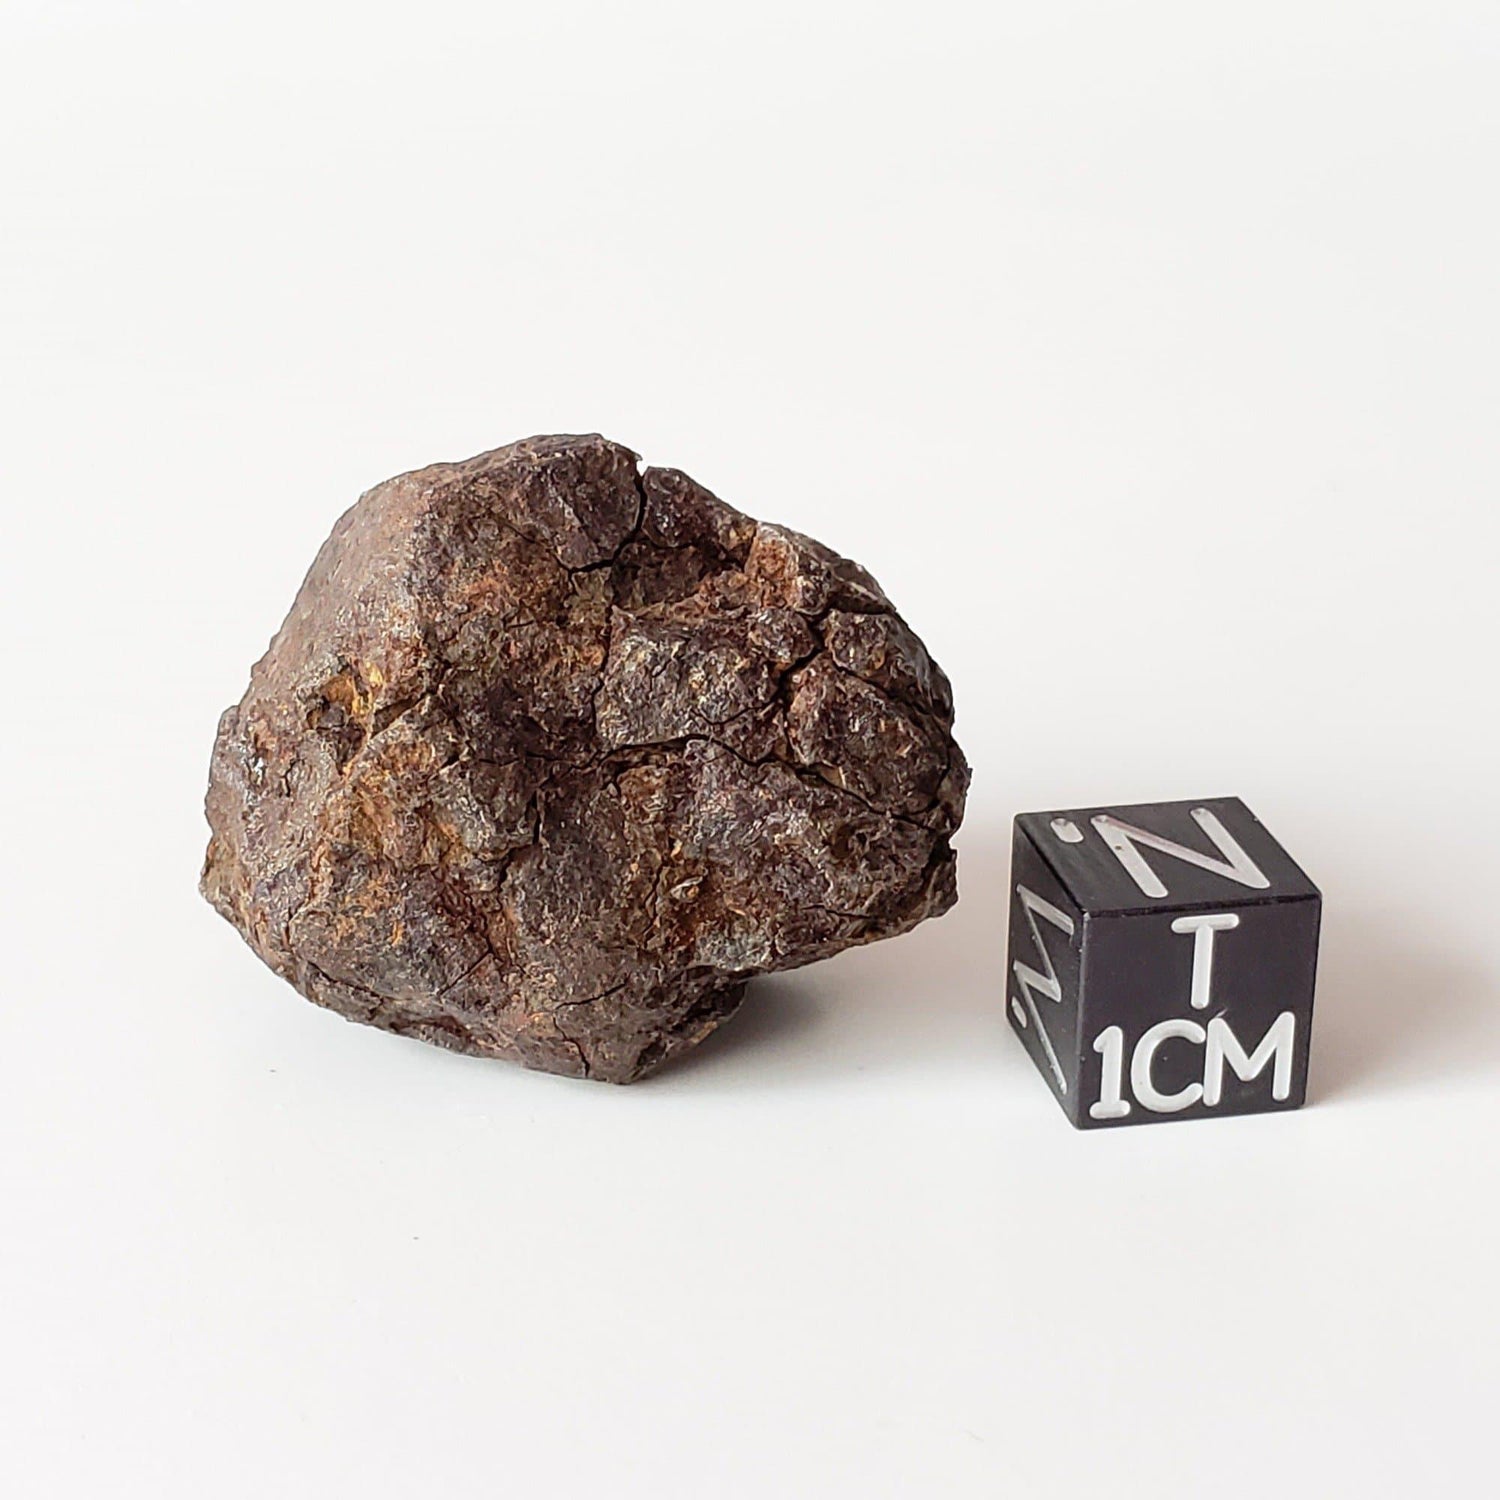 Vaca Muerta Meteorite | 34 Grams | Individual | Mesosiderite A1 | Famous | Chile